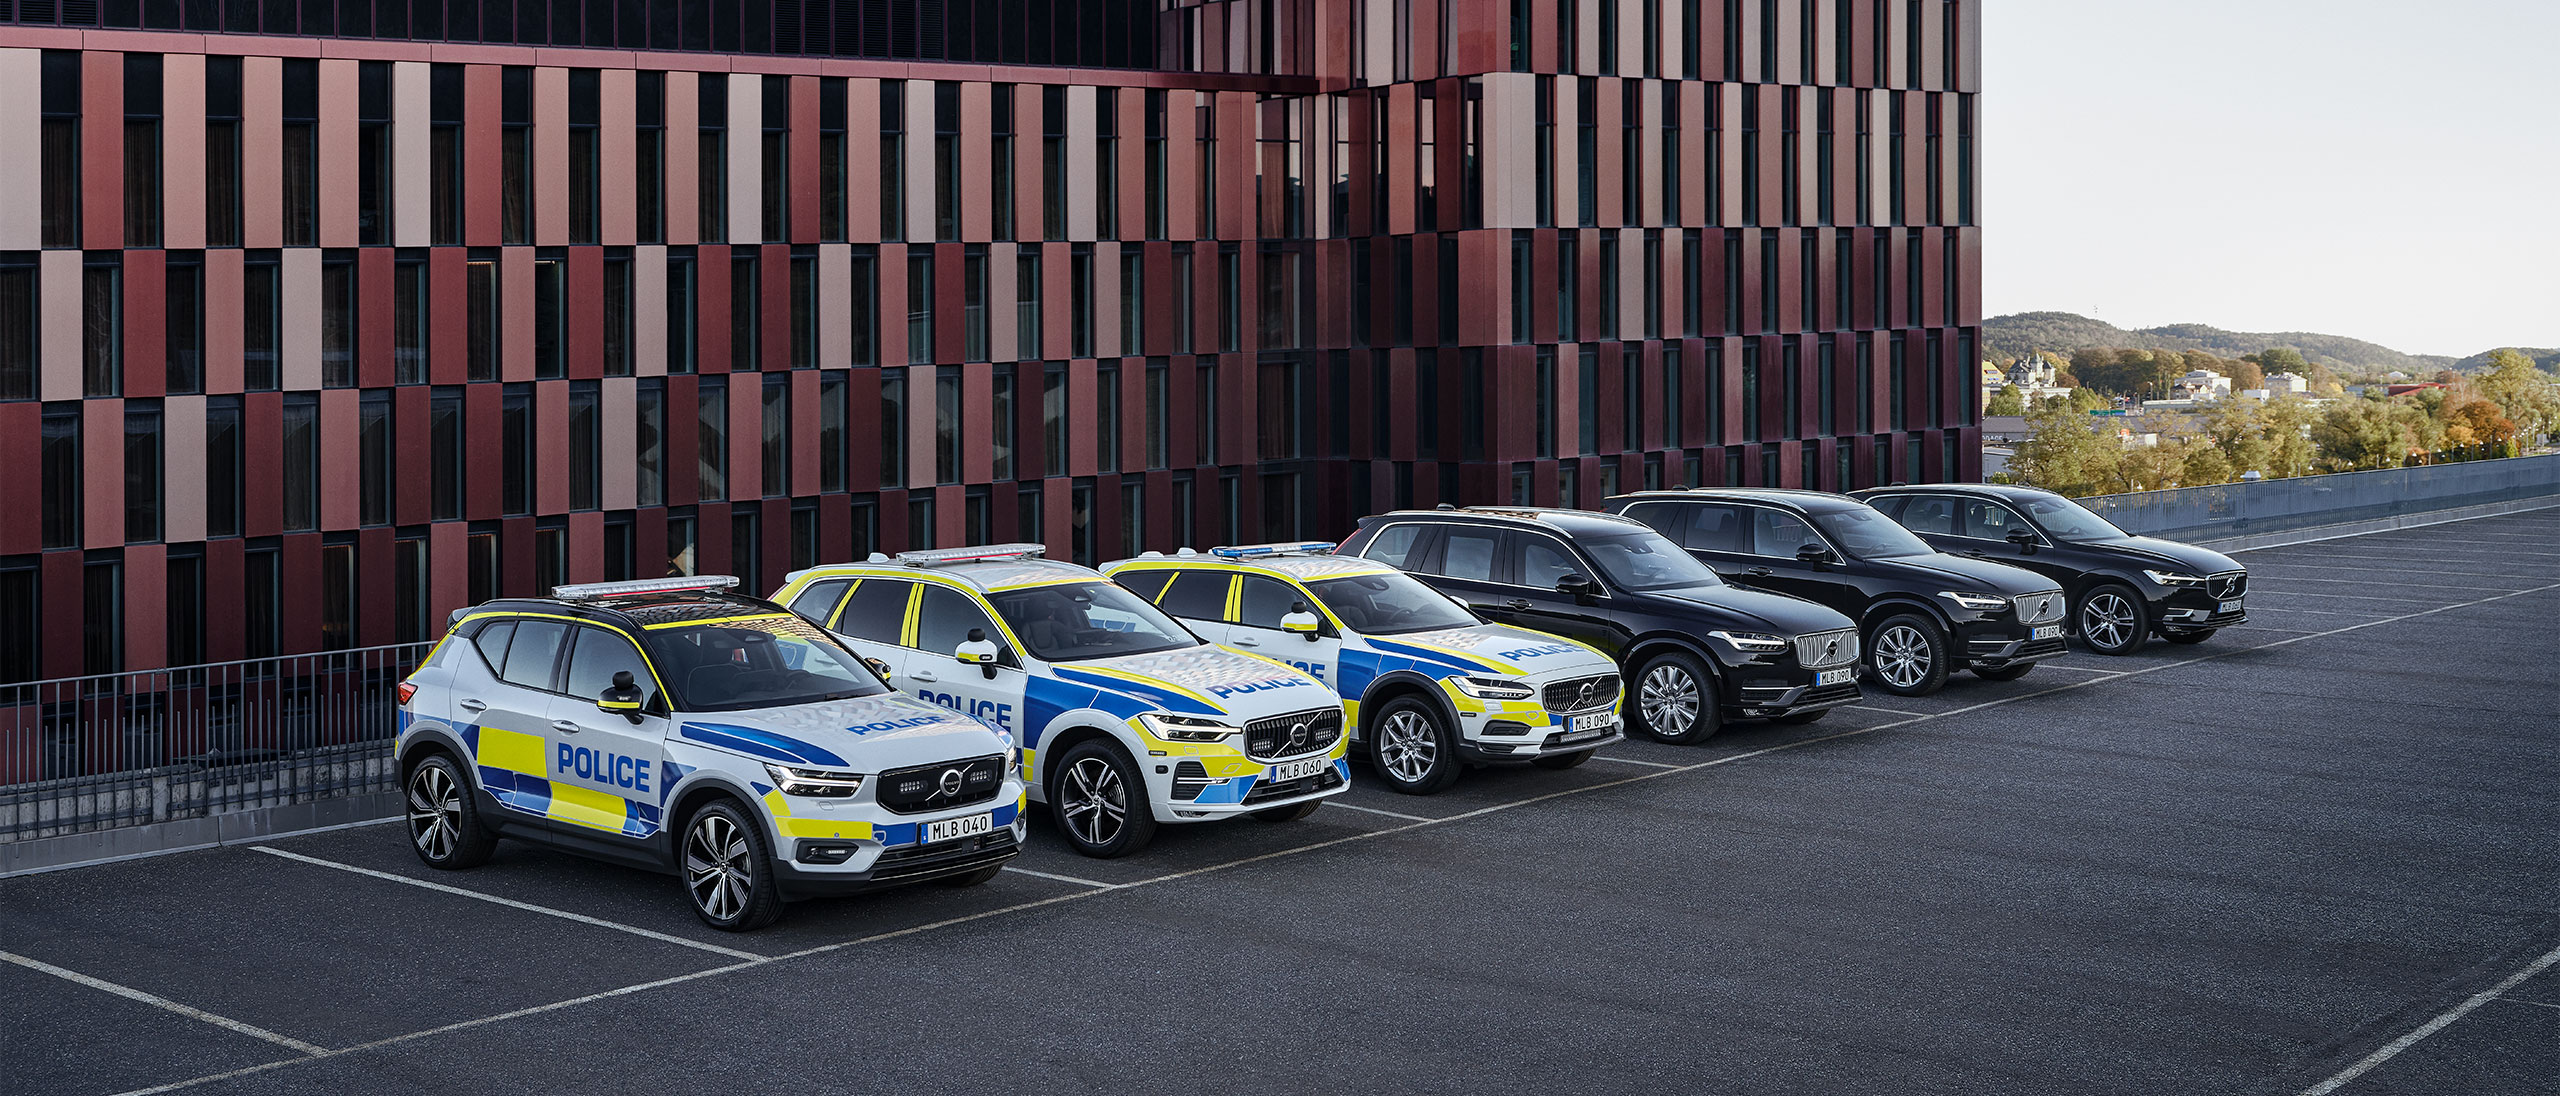 Tre Volvo-polisbilar och tre bepansrade Volvo-SUV:ar parkerade utanför en officiell byggnad